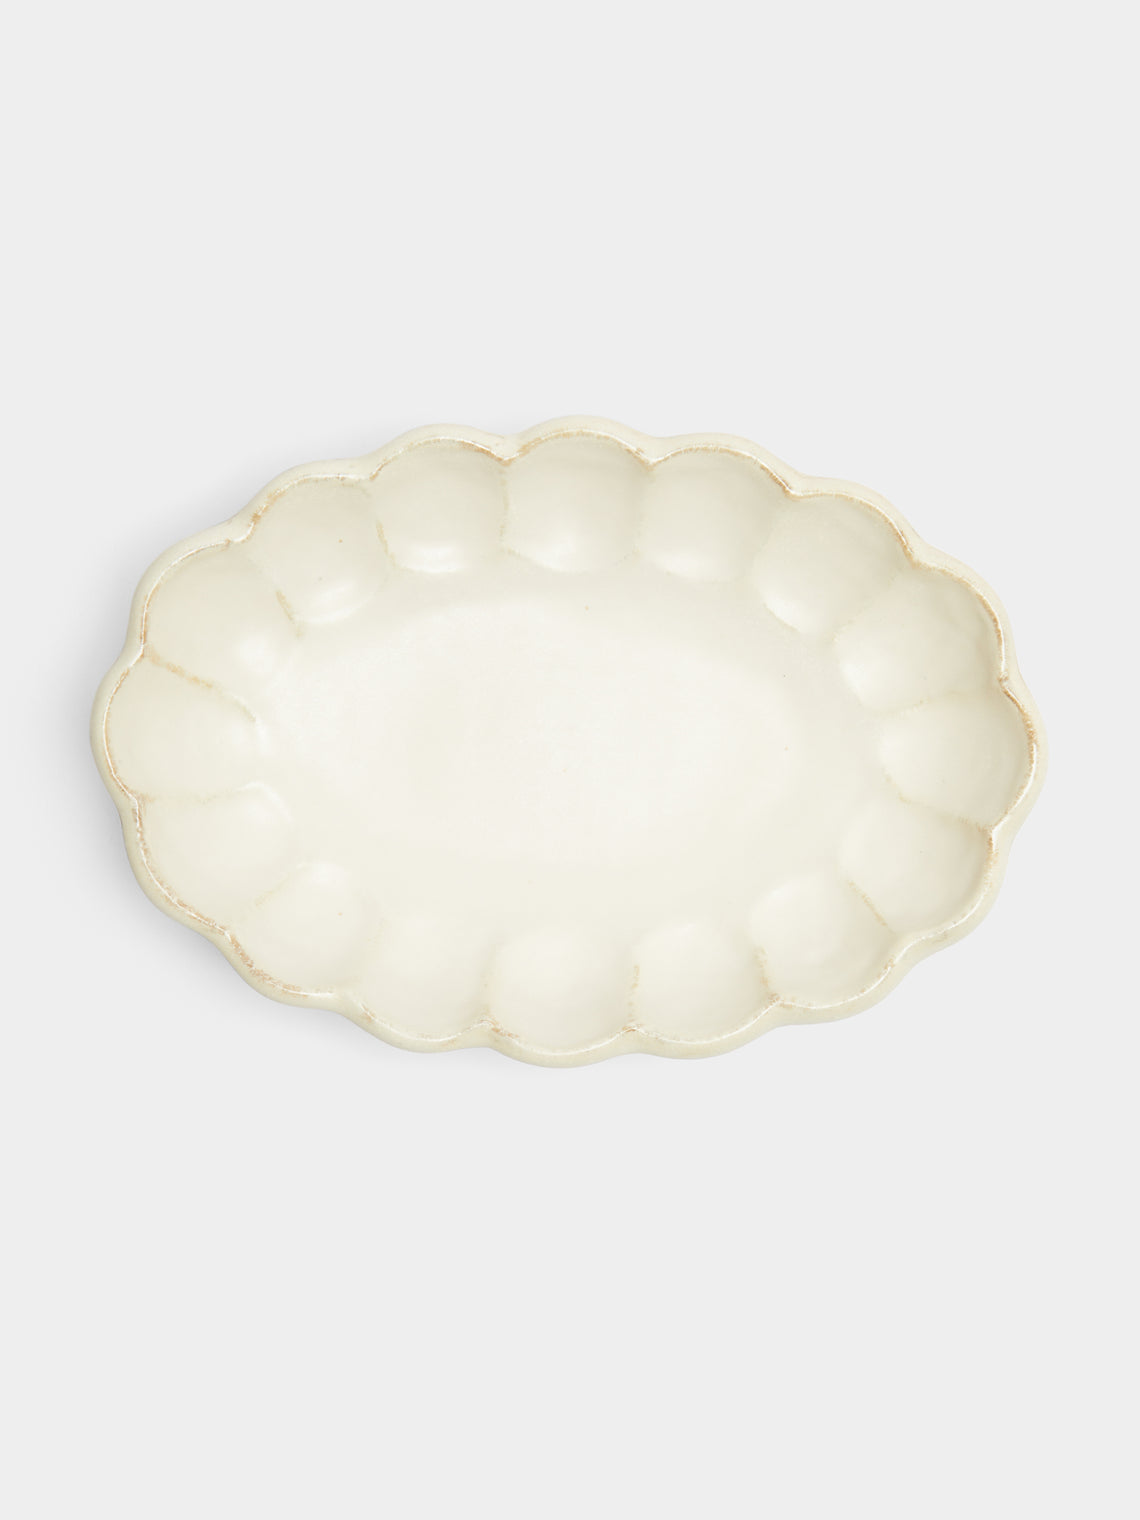 Kaneko Kohyo - Rinka Ceramic Shallow Serving Bowl - White - ABASK